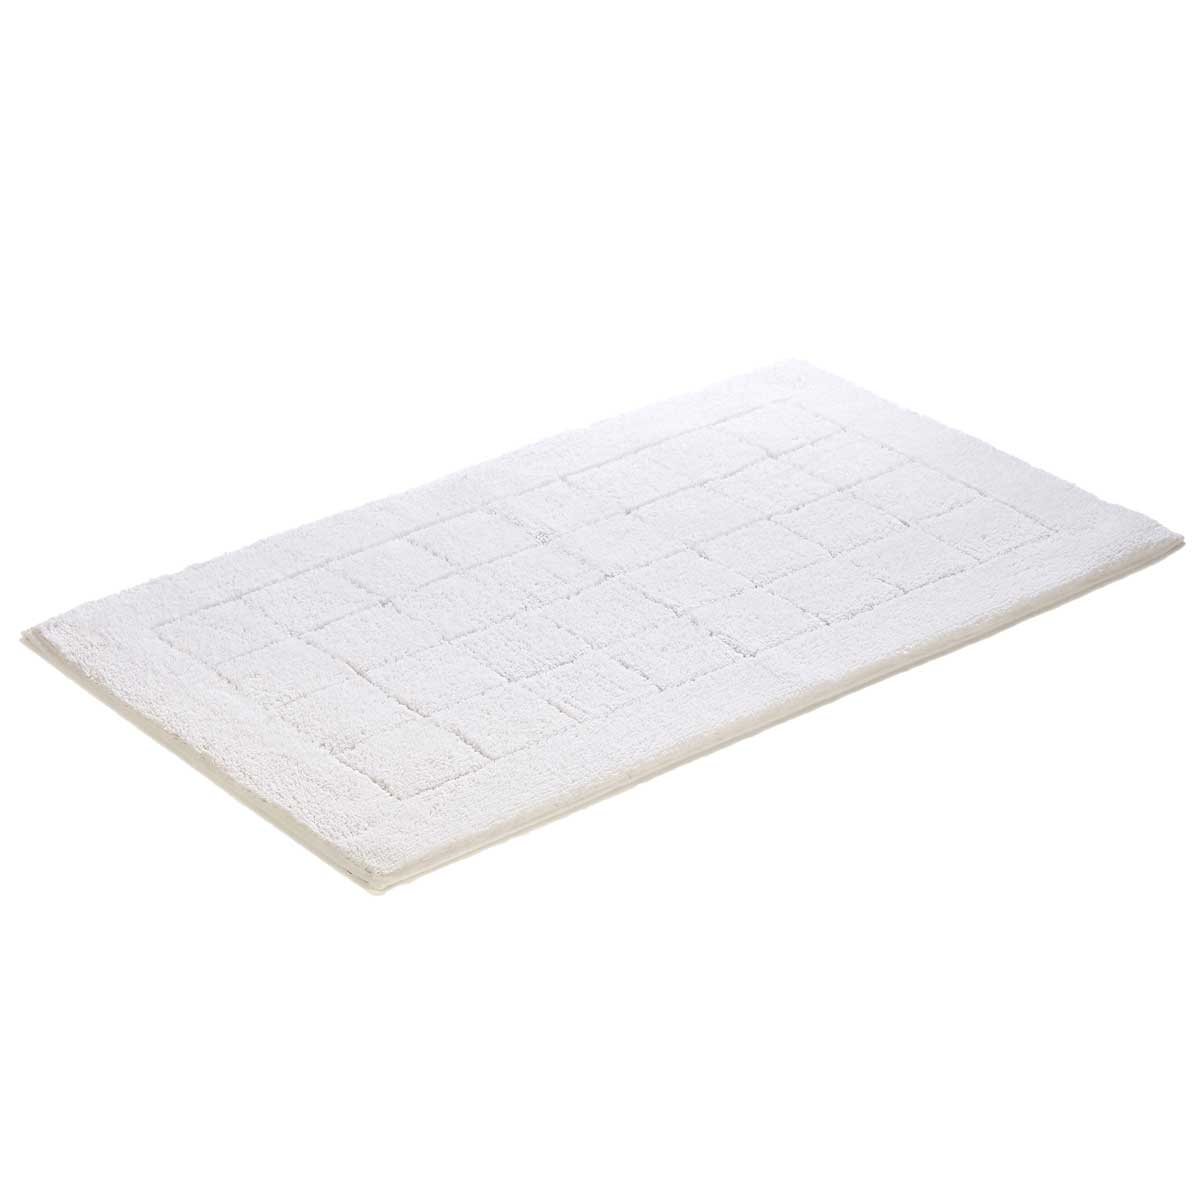 Коврик для ванной комнаты Vossen Exclusive 60x100см, белый коврик для ванной комнаты carl серый 60 90 ridder